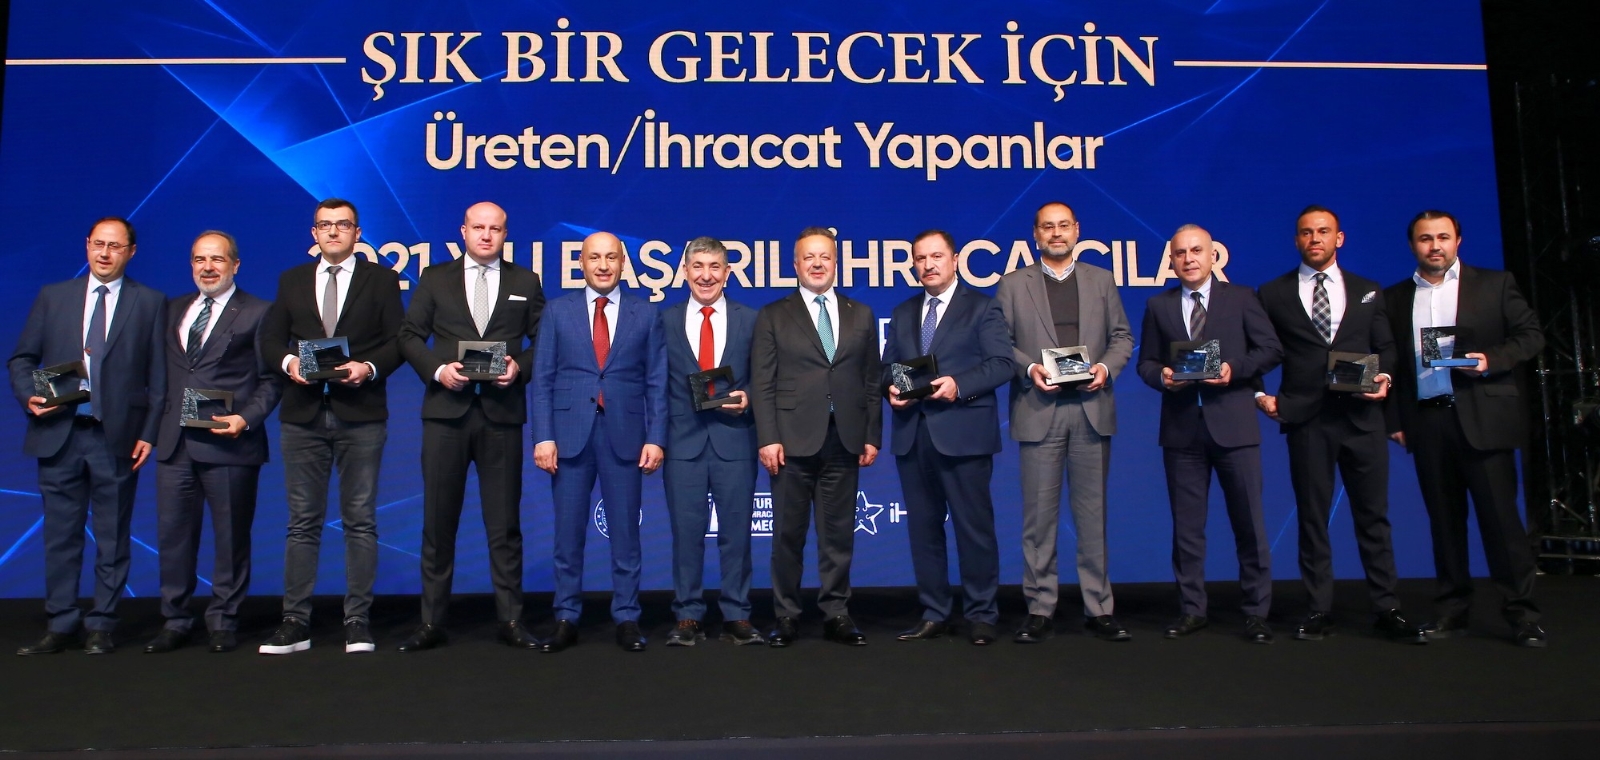 TİM Başkanı Gülle: “Türkiye’nin güvenilir bir iş ortağı olduğunu tüm dünyaya gösterdik”